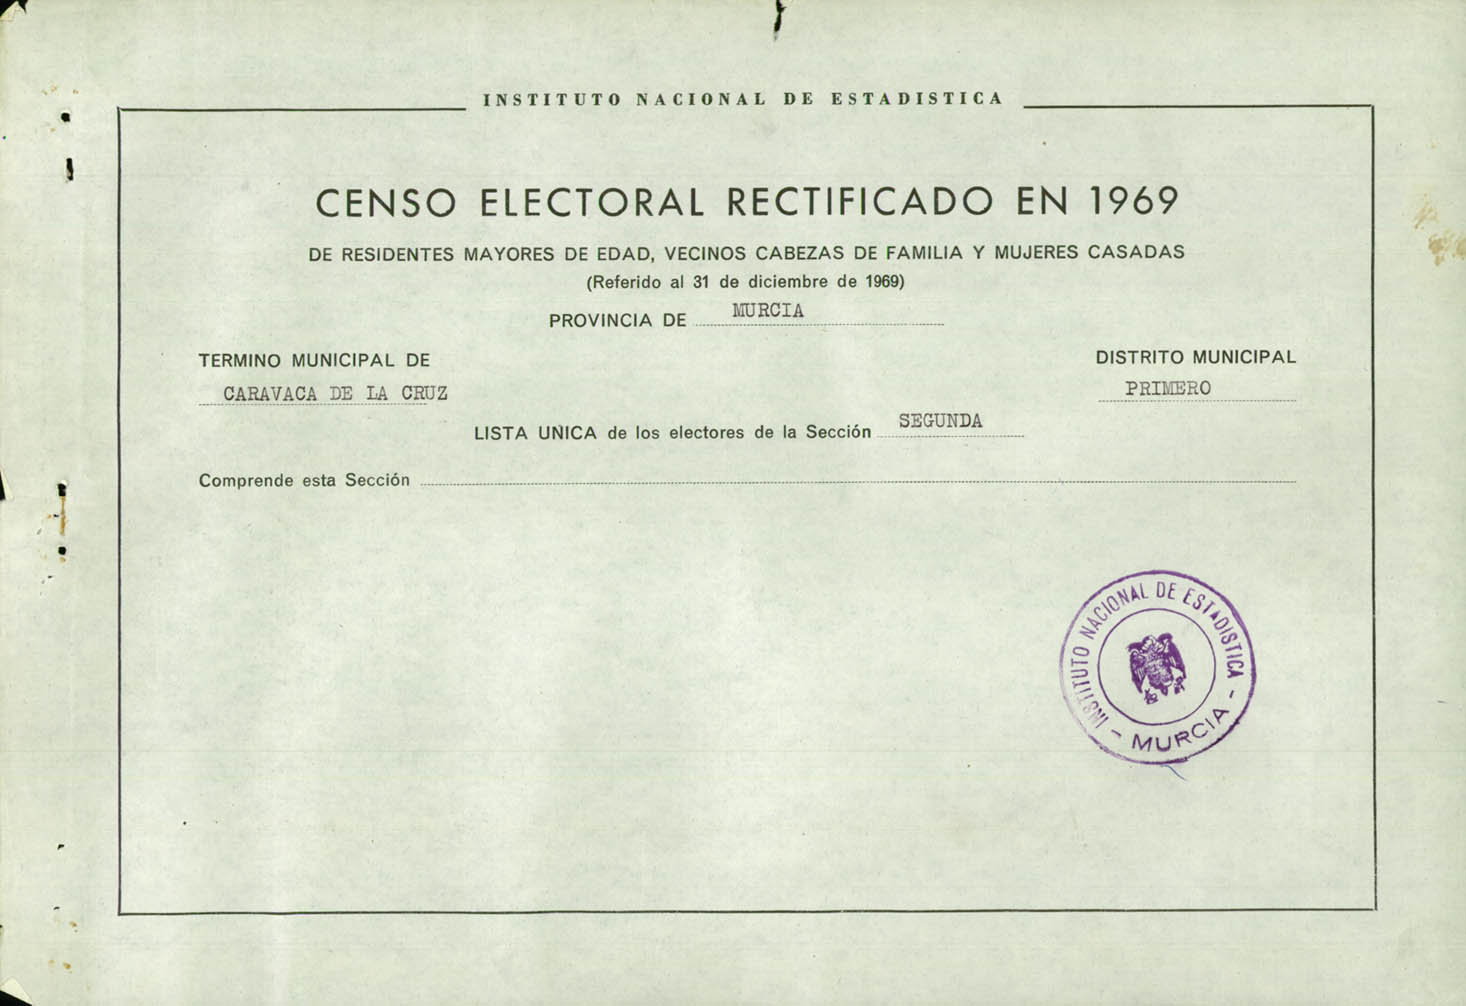 Censo electoral rectificado en 1969: listas definitivas de Caravaca de la Cruz, Distrito 1º, sección 2º.